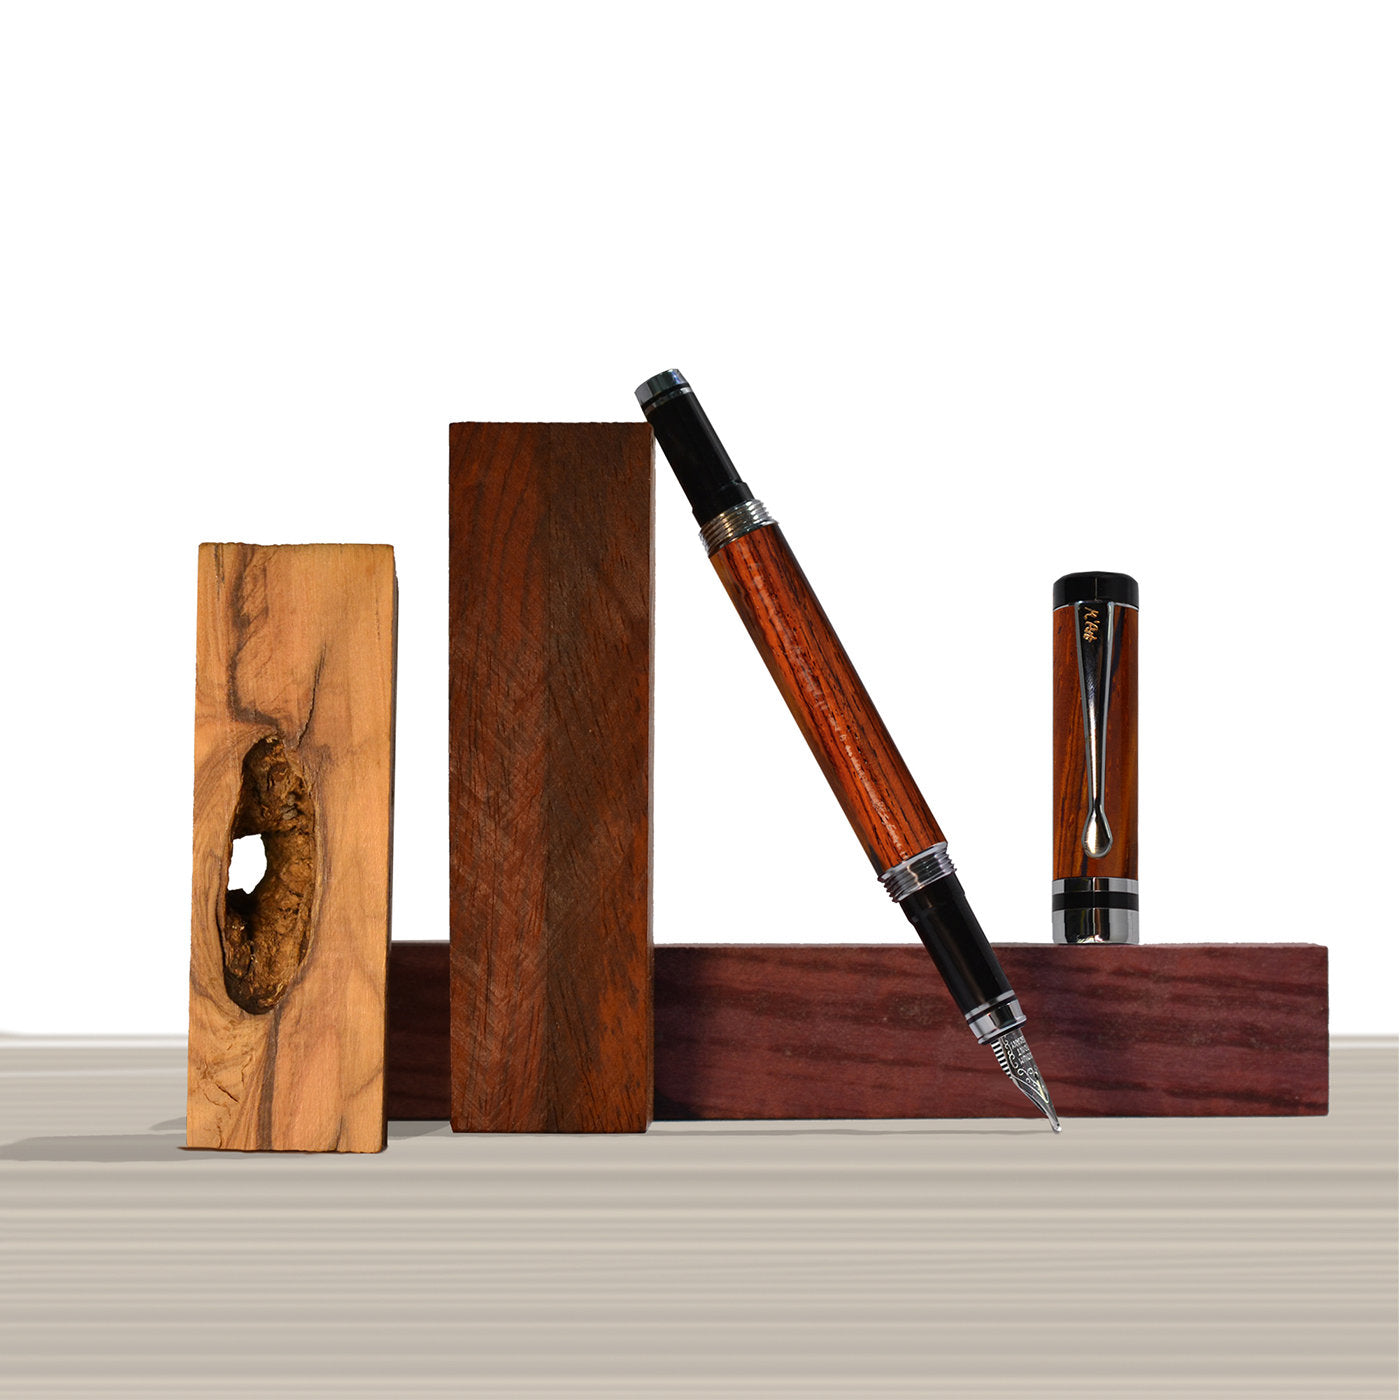 Ipazia Fountain Pen in Cocobolo Wood - Alternative view 3